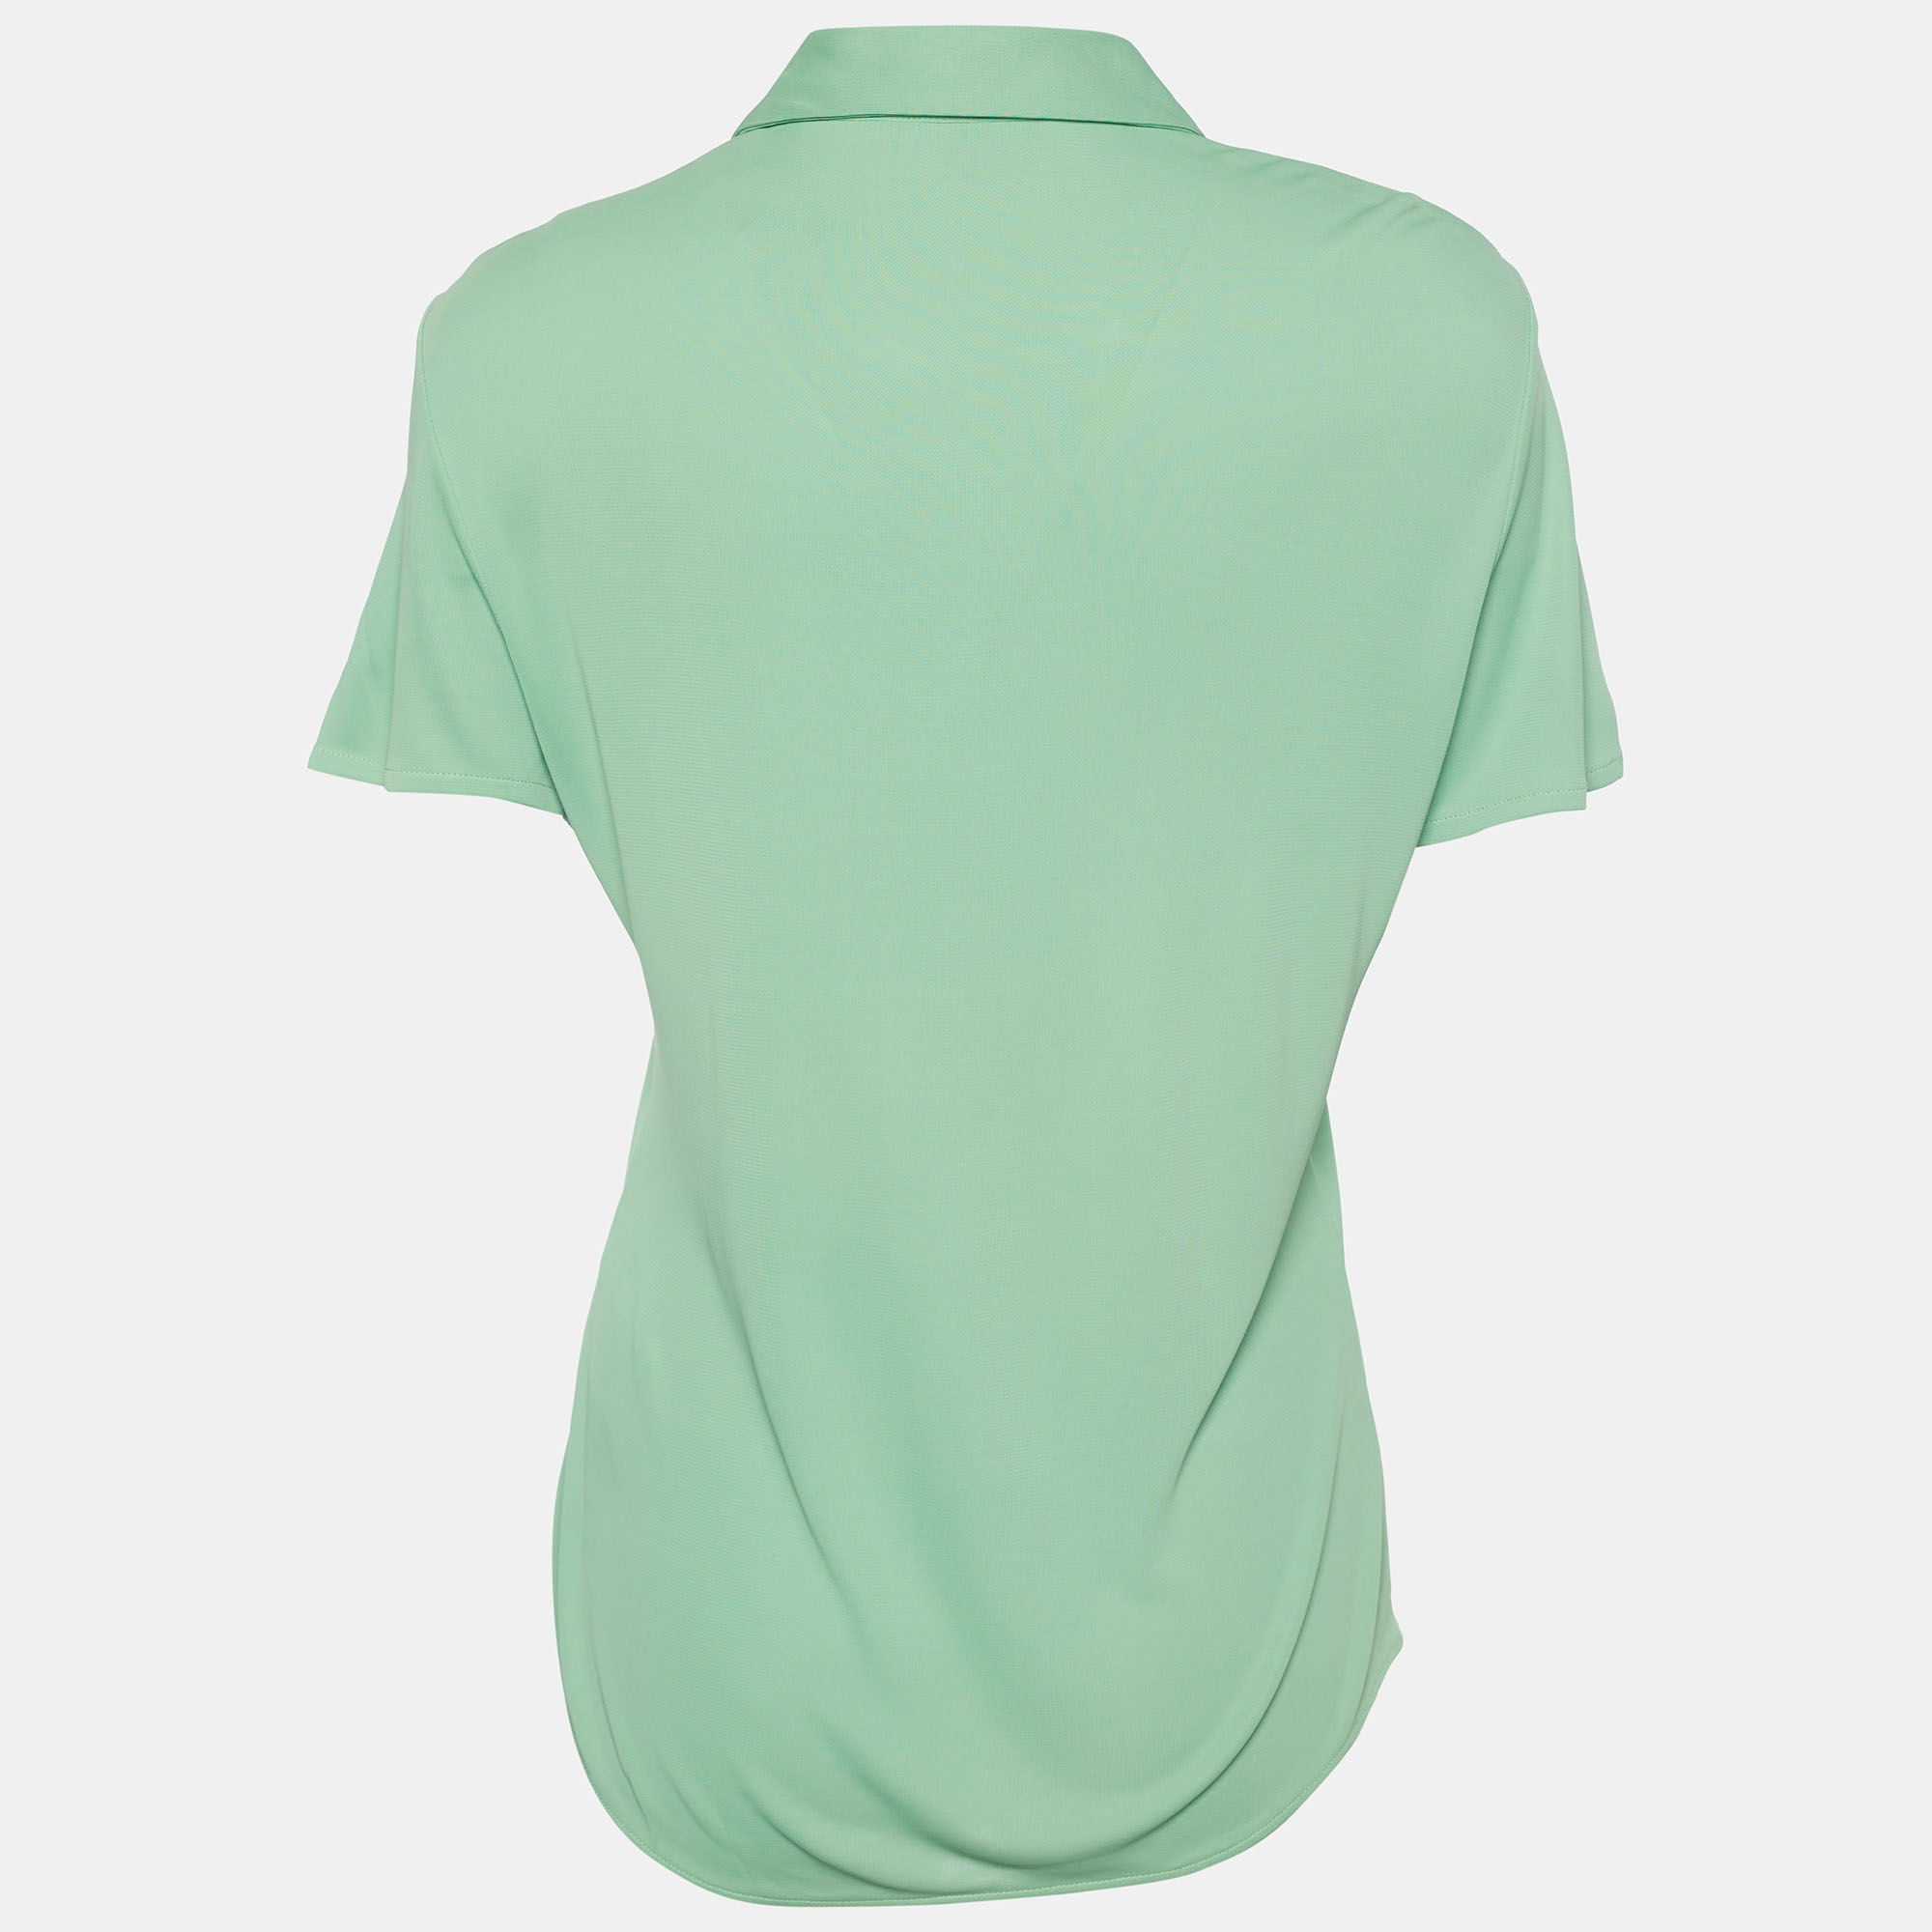 

Versus Versace Green Jersey Knit Button Front Shirt